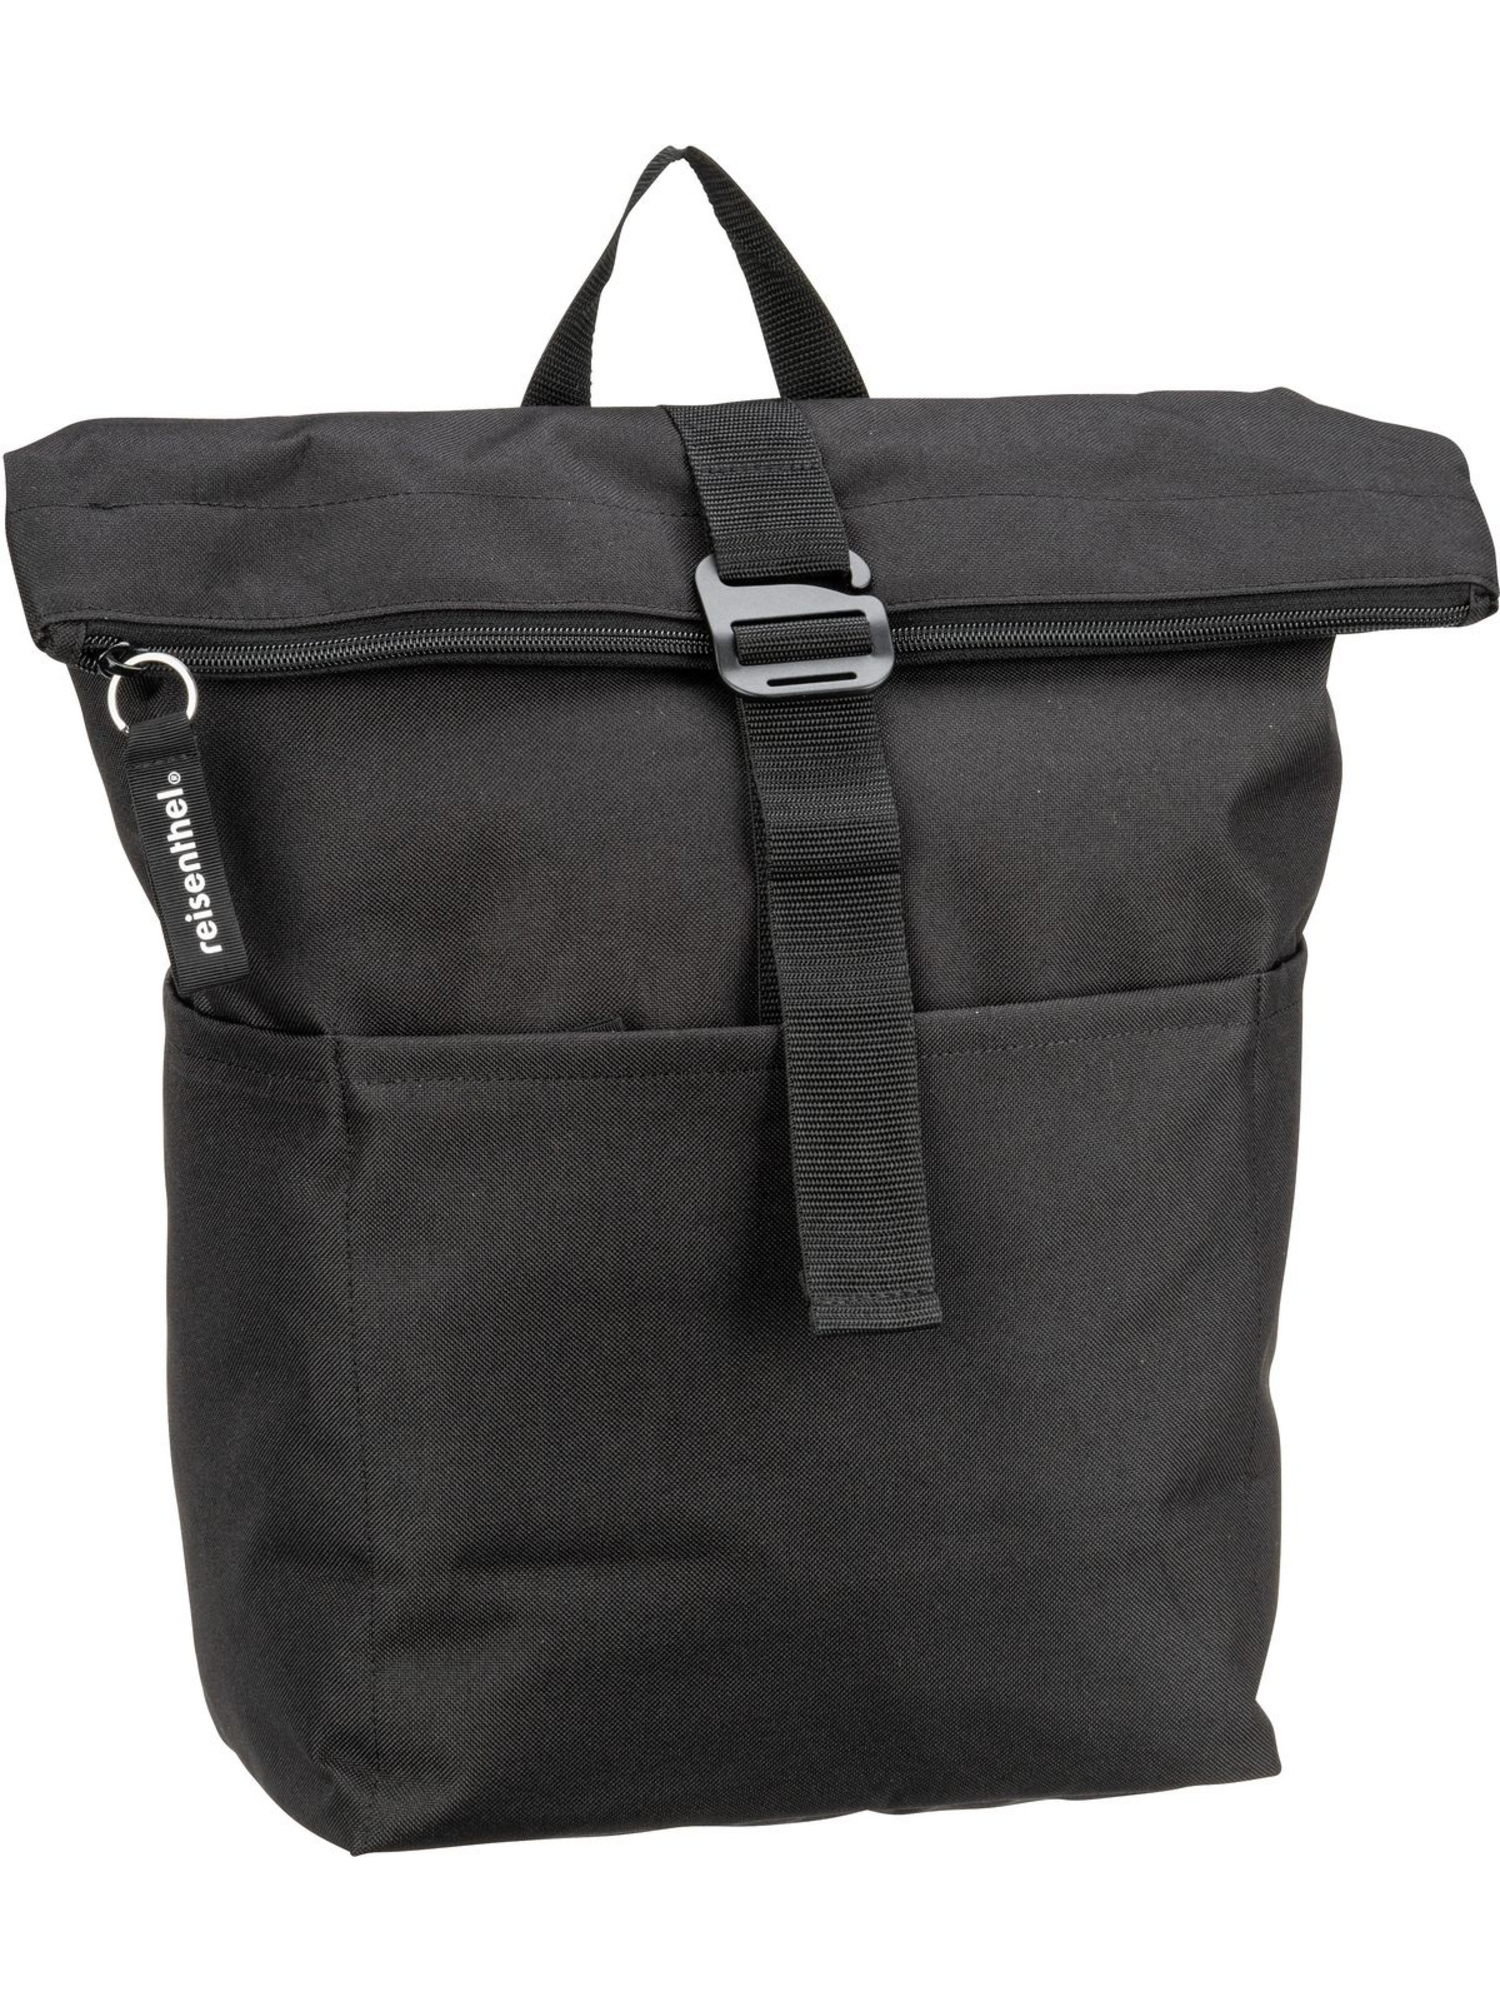 Рюкзак Reisenthel Rolltop rolltop backpack, черный цена и фото